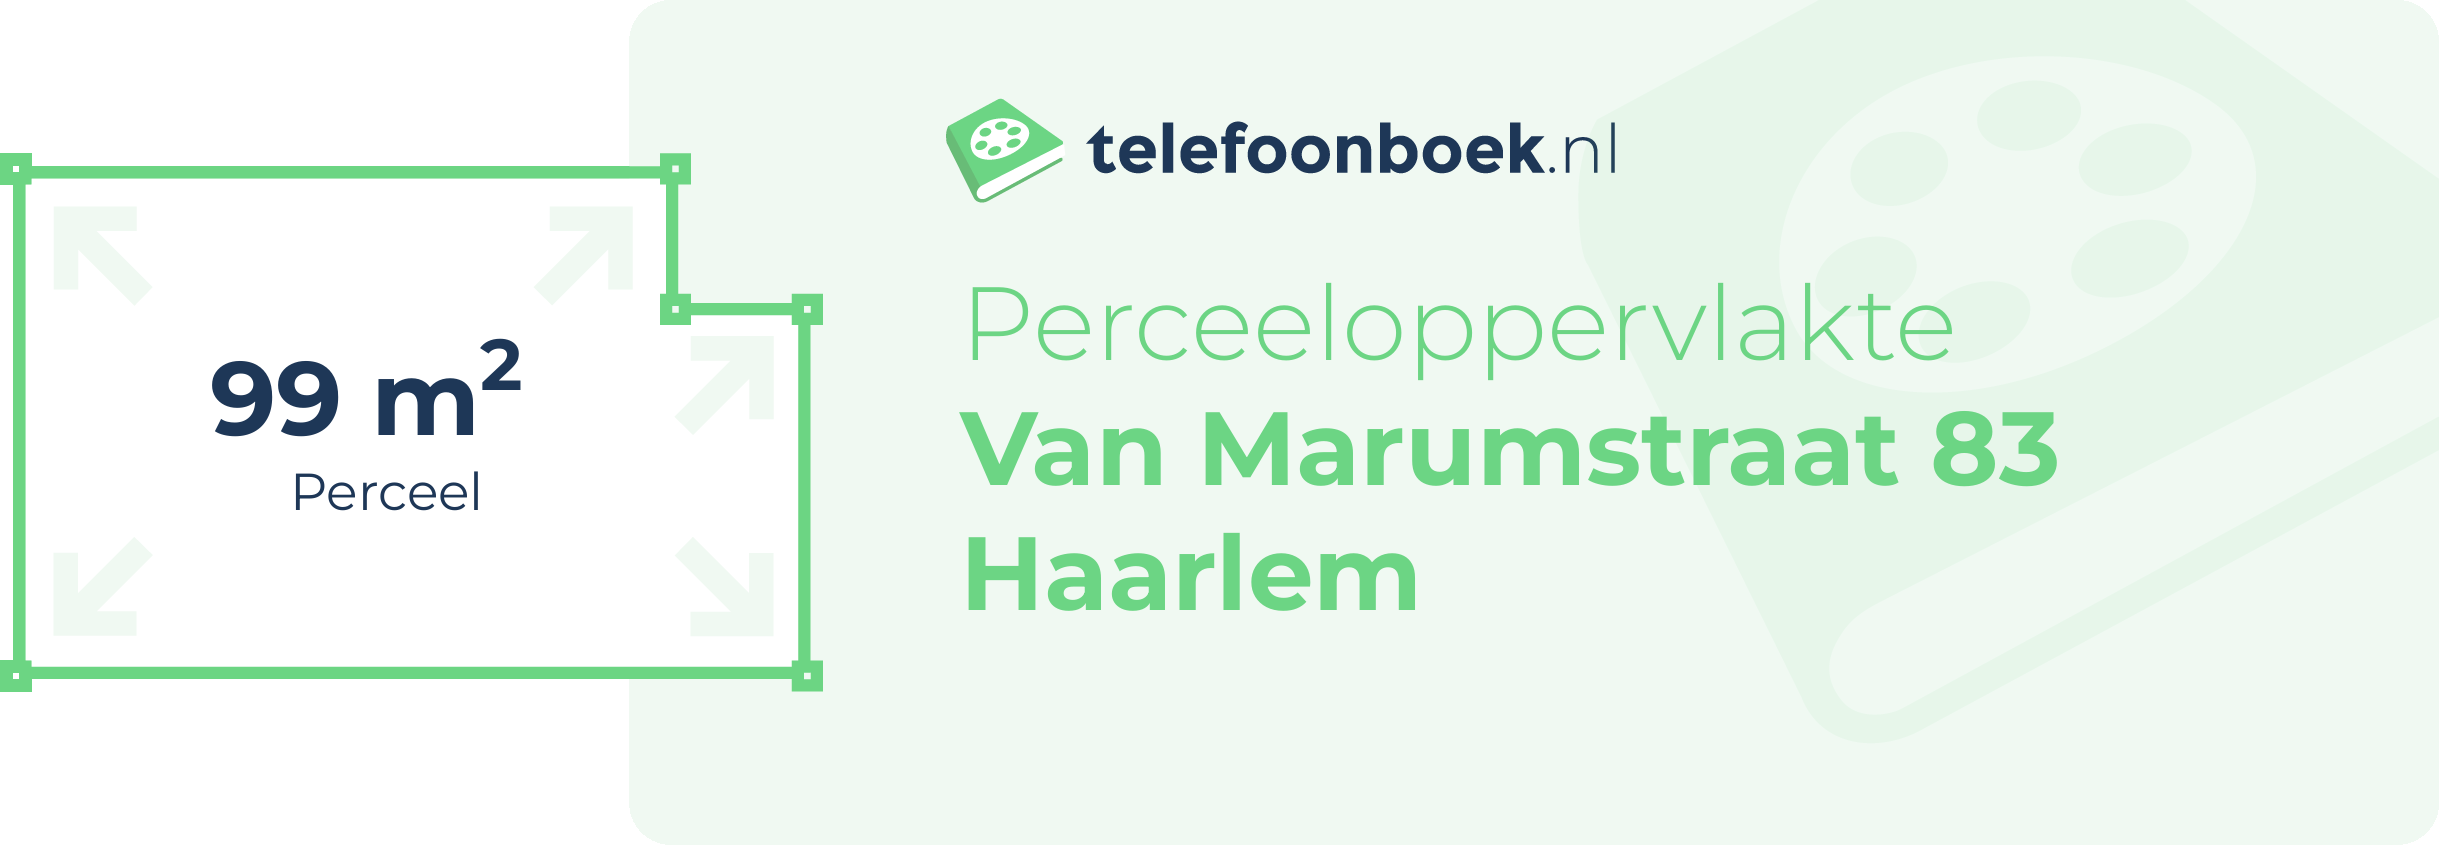 Perceeloppervlakte Van Marumstraat 83 Haarlem